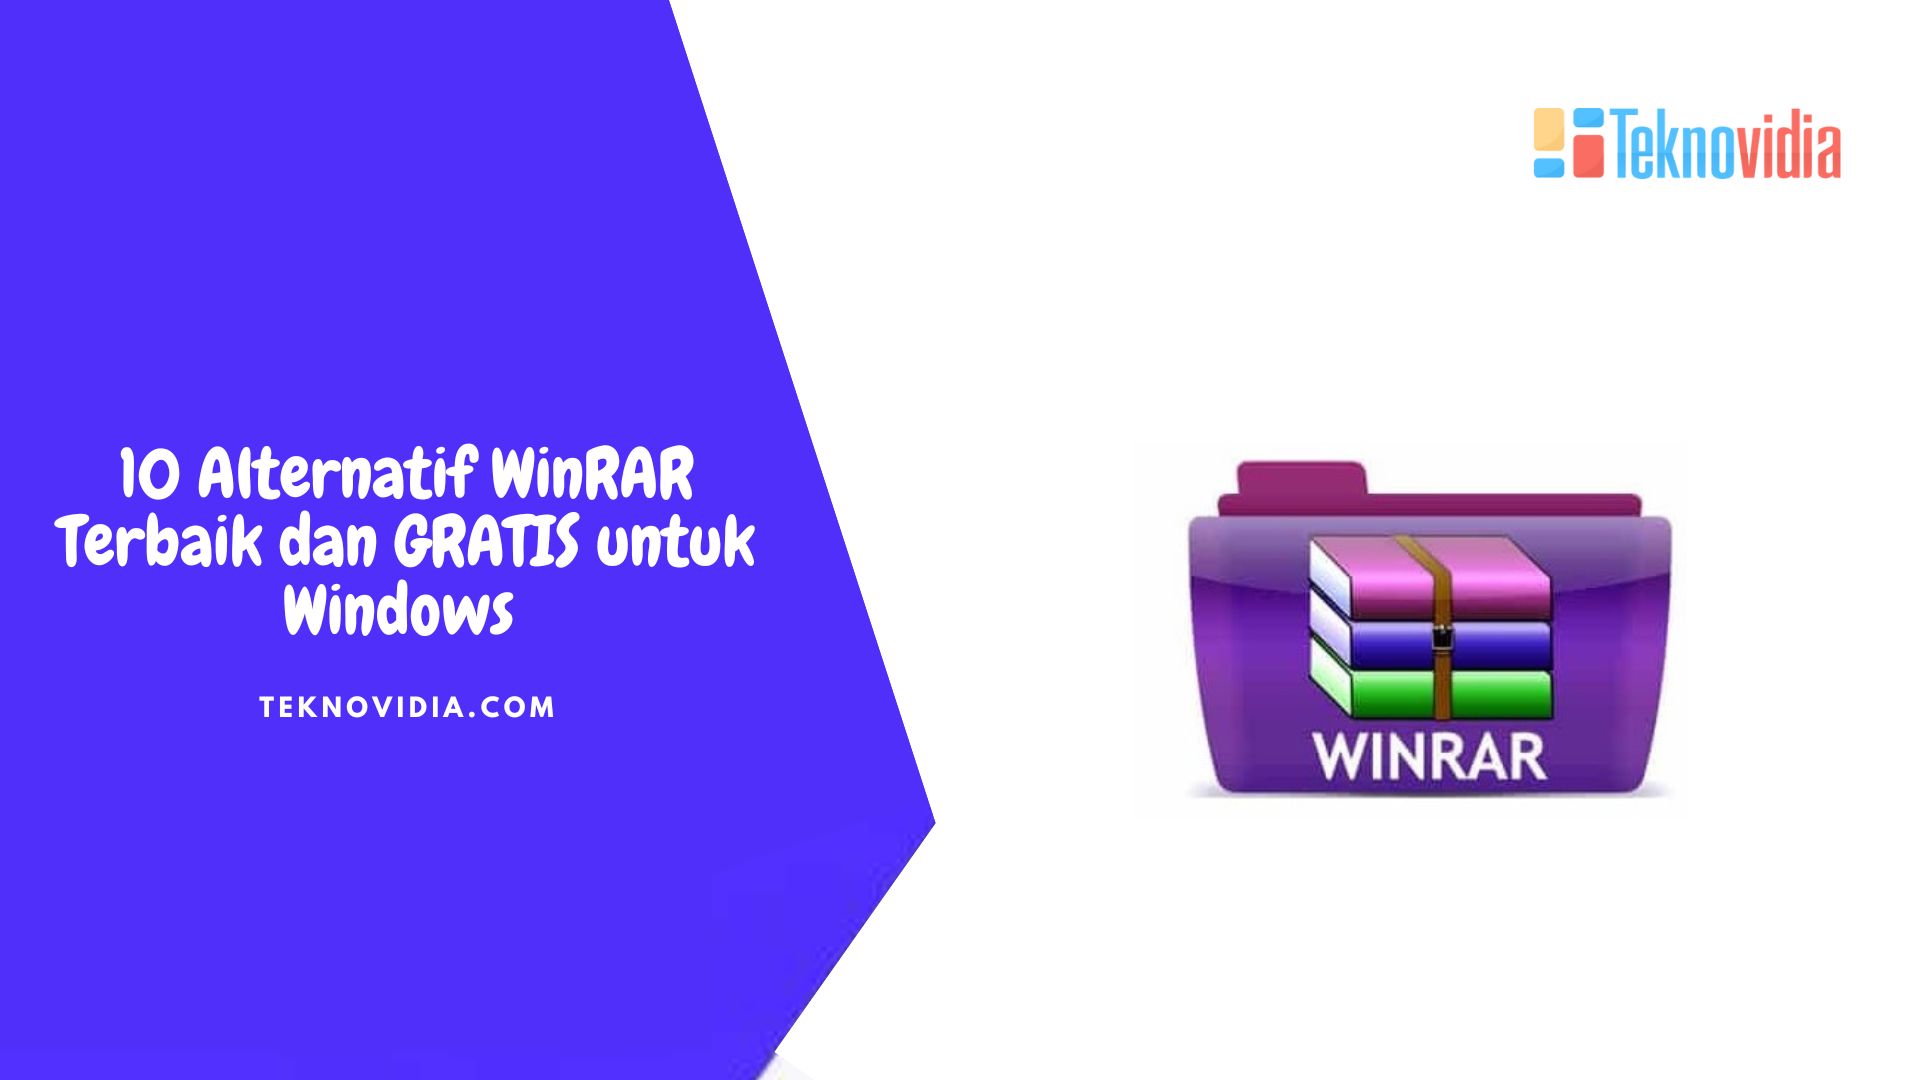 10 Alternatif WinRAR Terbaik dan GRATIS untuk Windows